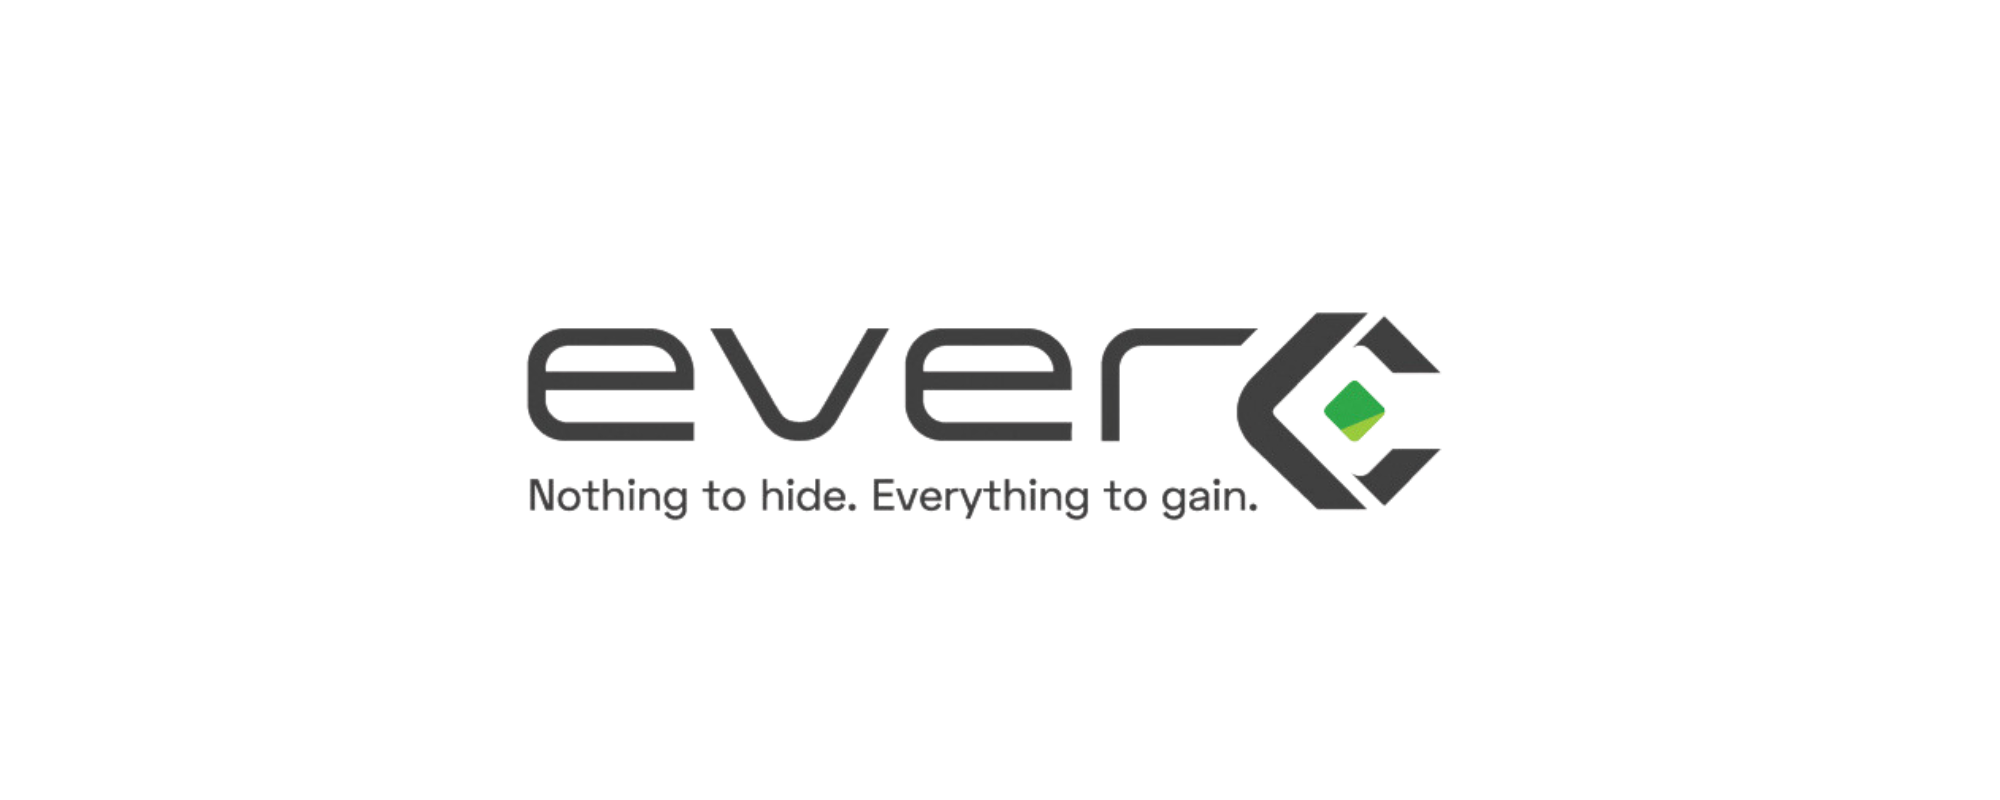 Everc logo